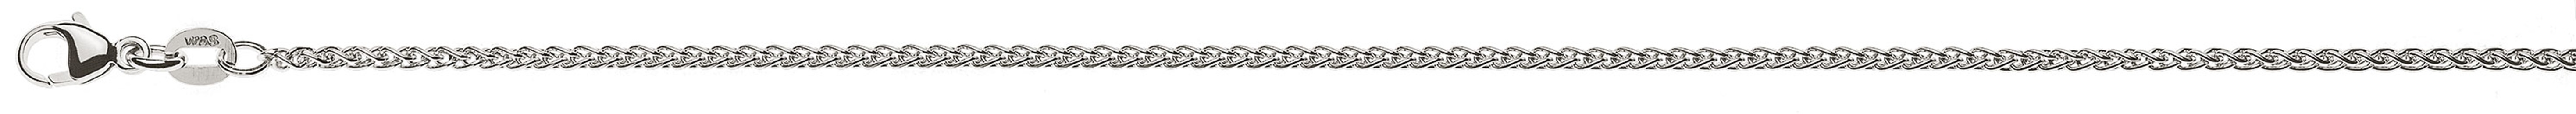 AURONOS Prestige Necklace white gold 18K cable chain 38cm 1.65mm